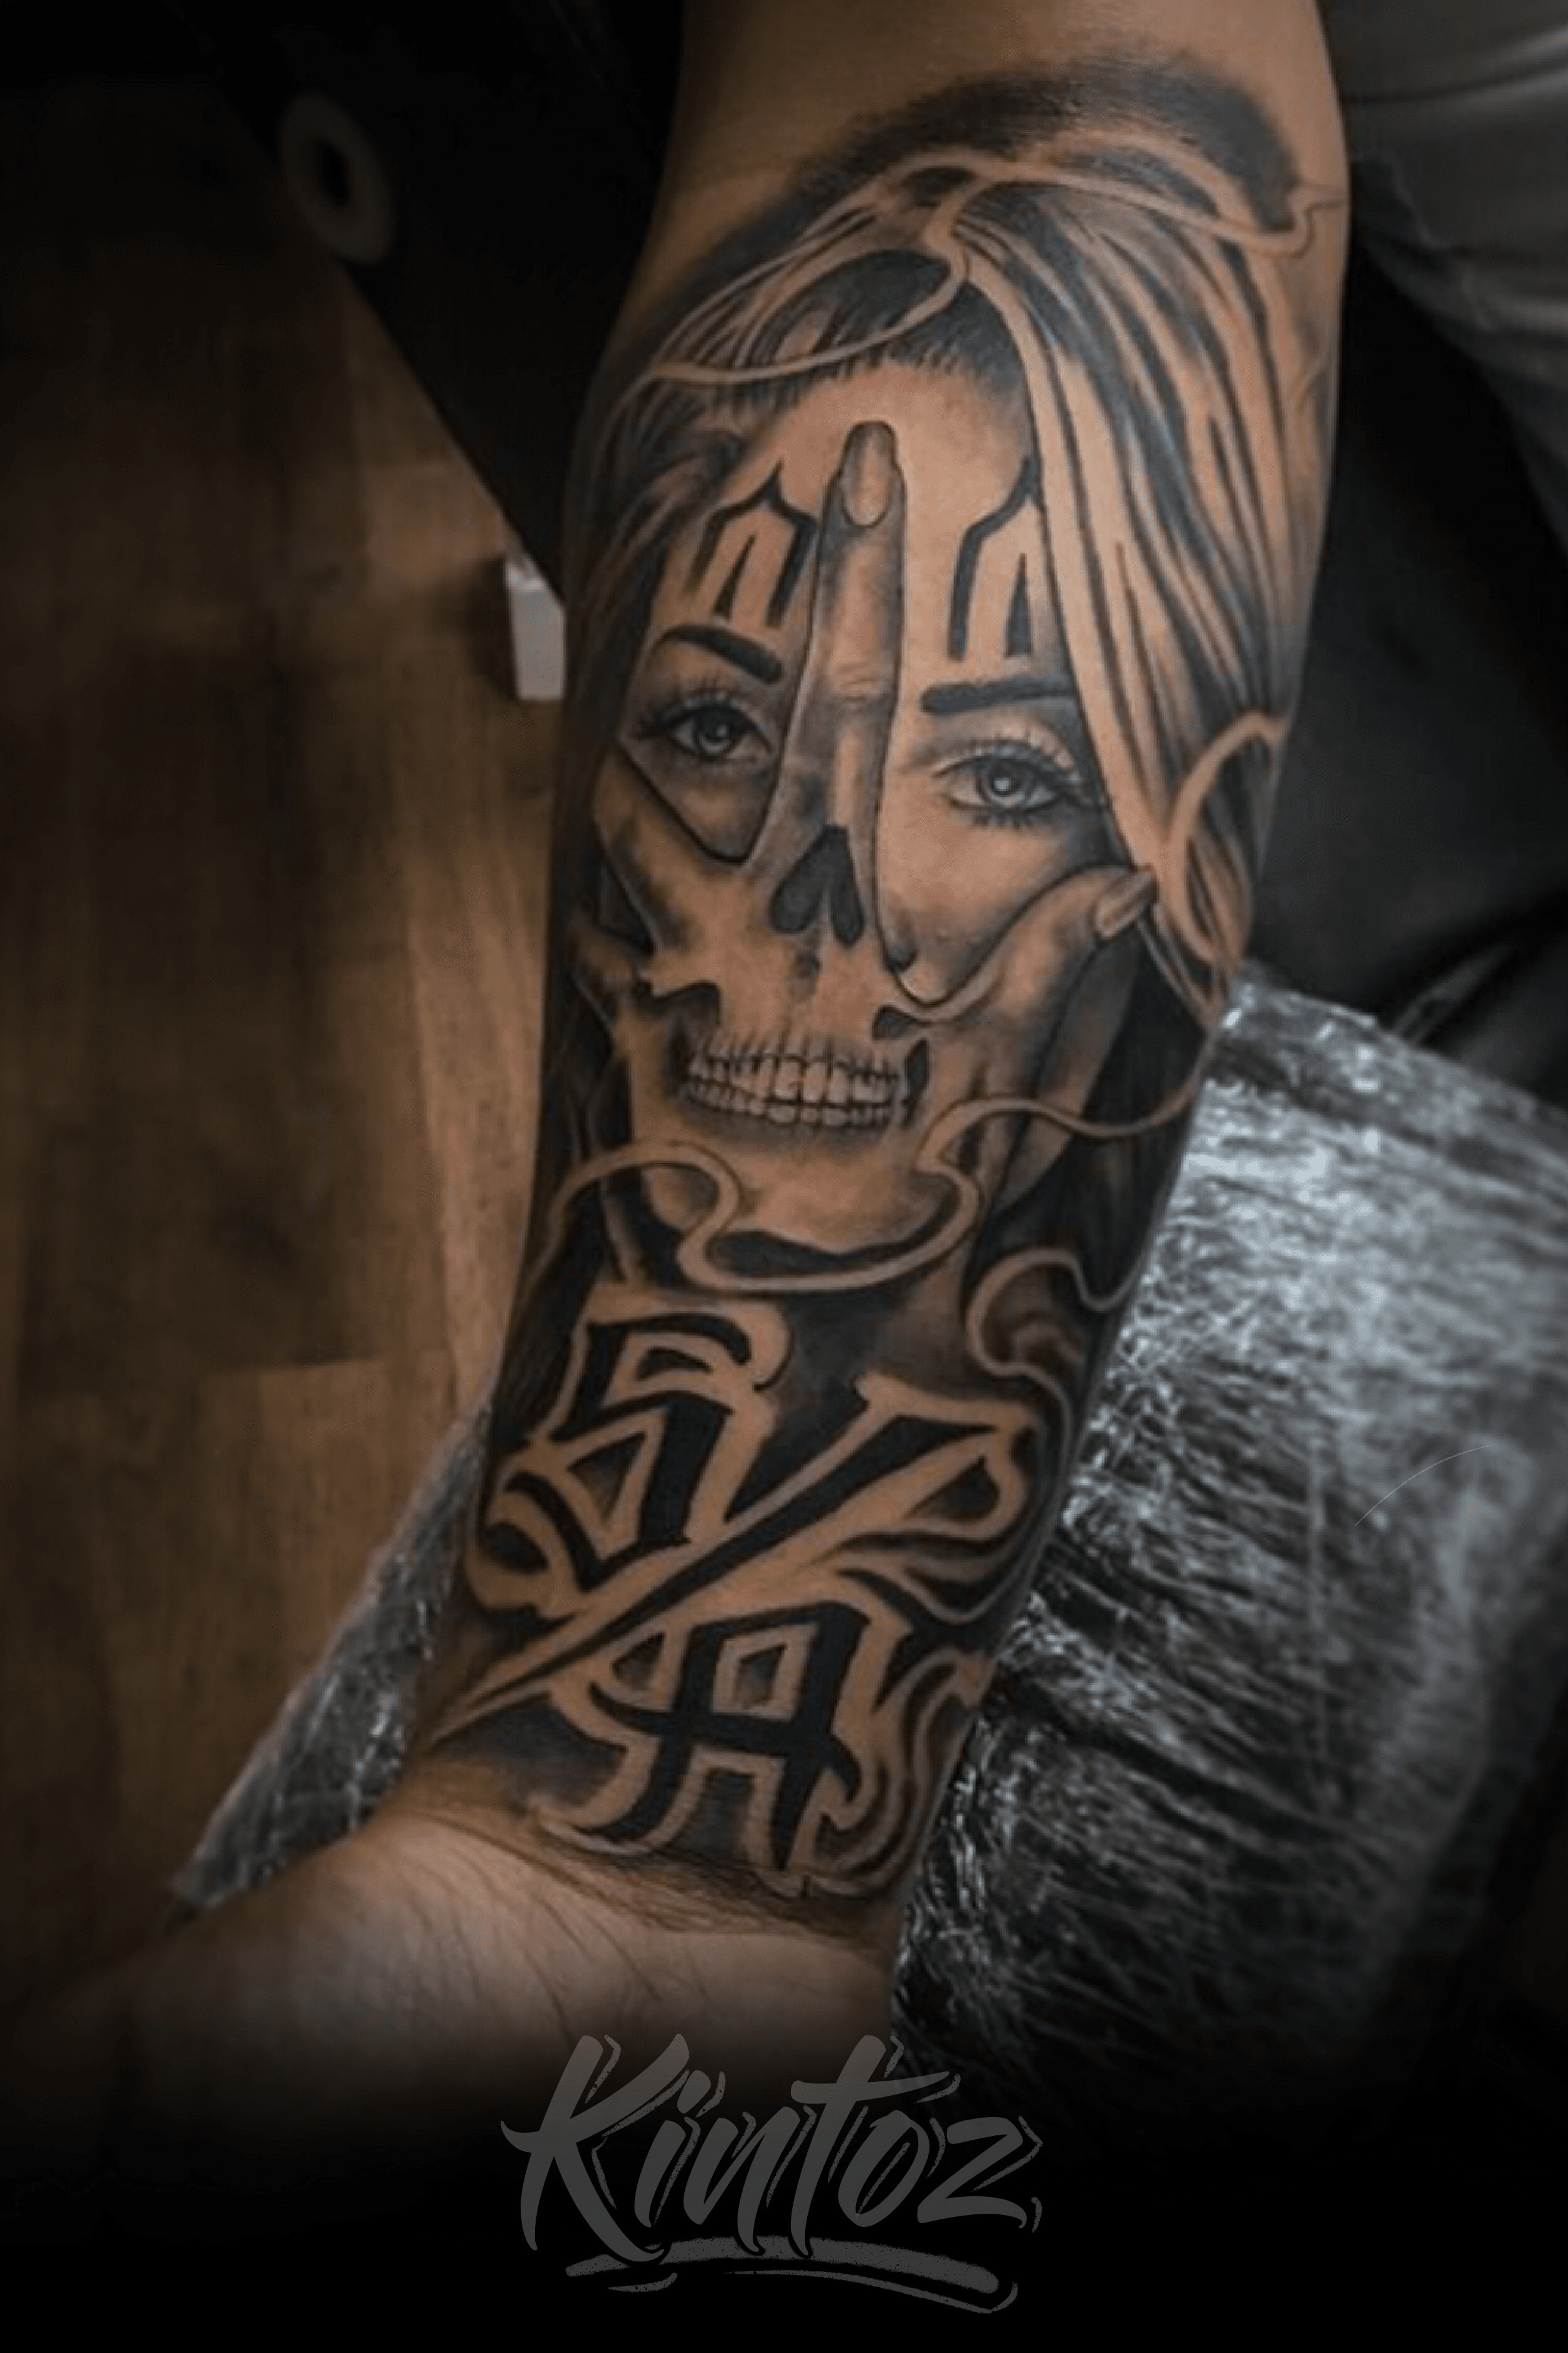 Tattoo uploaded by (S/A) South Atlanta Studio & Gallery • Clown face skull hand tattoo South Atlanta logo tattoos by kintoz #atlanta #atl #tattoo # tattoos #blackandgreytattoo #blackandgreytattoos #ink #atlantatattoos #atlantatattoo #tattooed ...